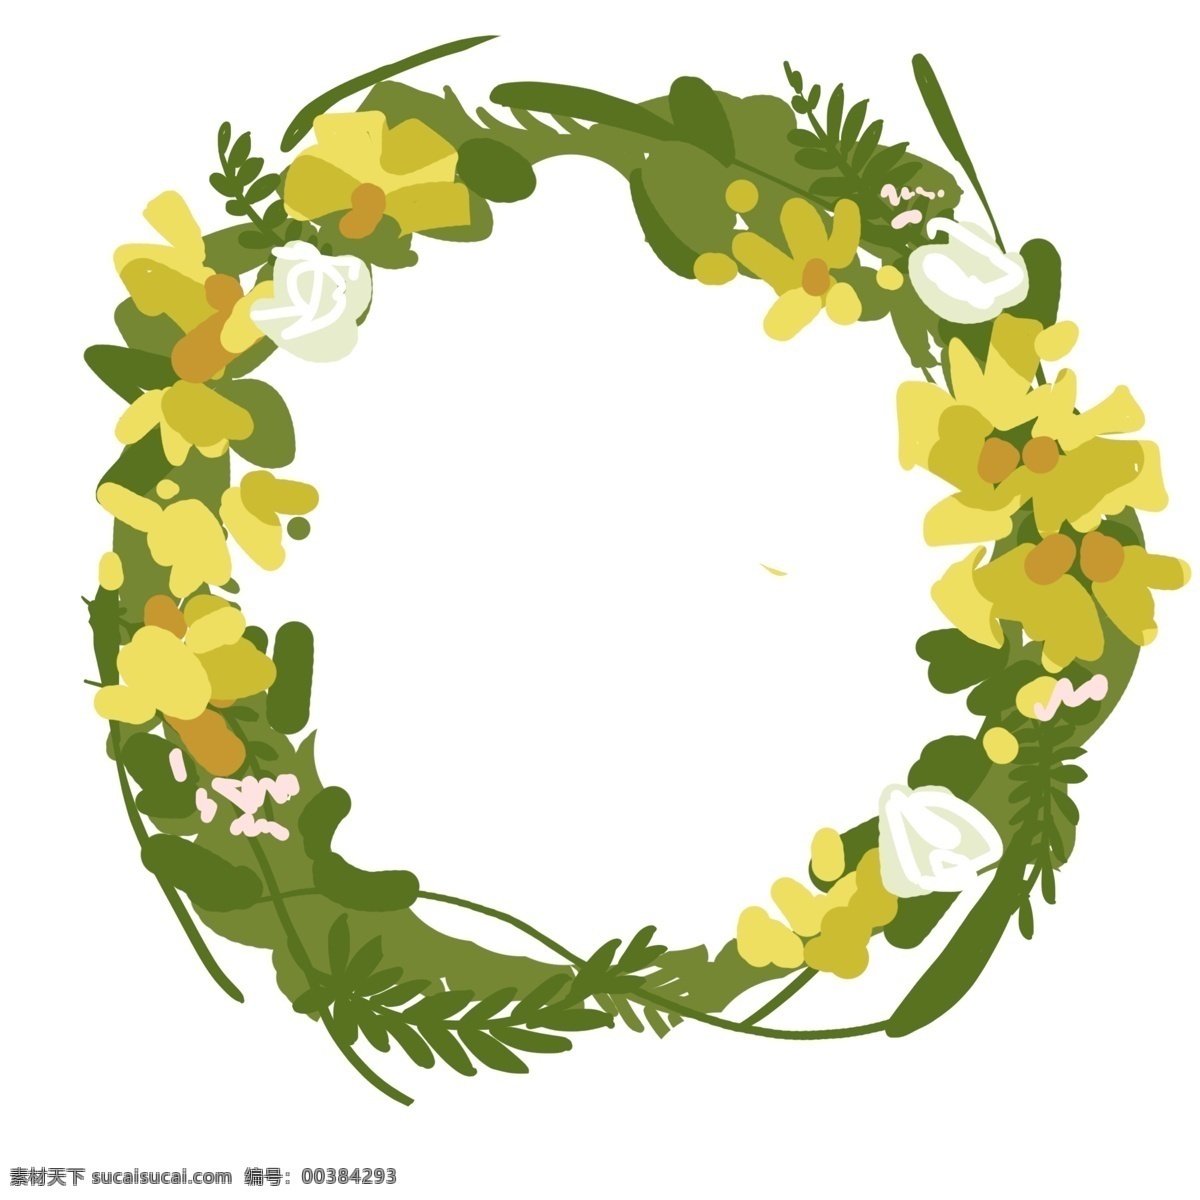 黄色 油菜花 花环 黄色的花朵 插画 植物花环 黄色的油菜花 花环边框 绿色的树叶